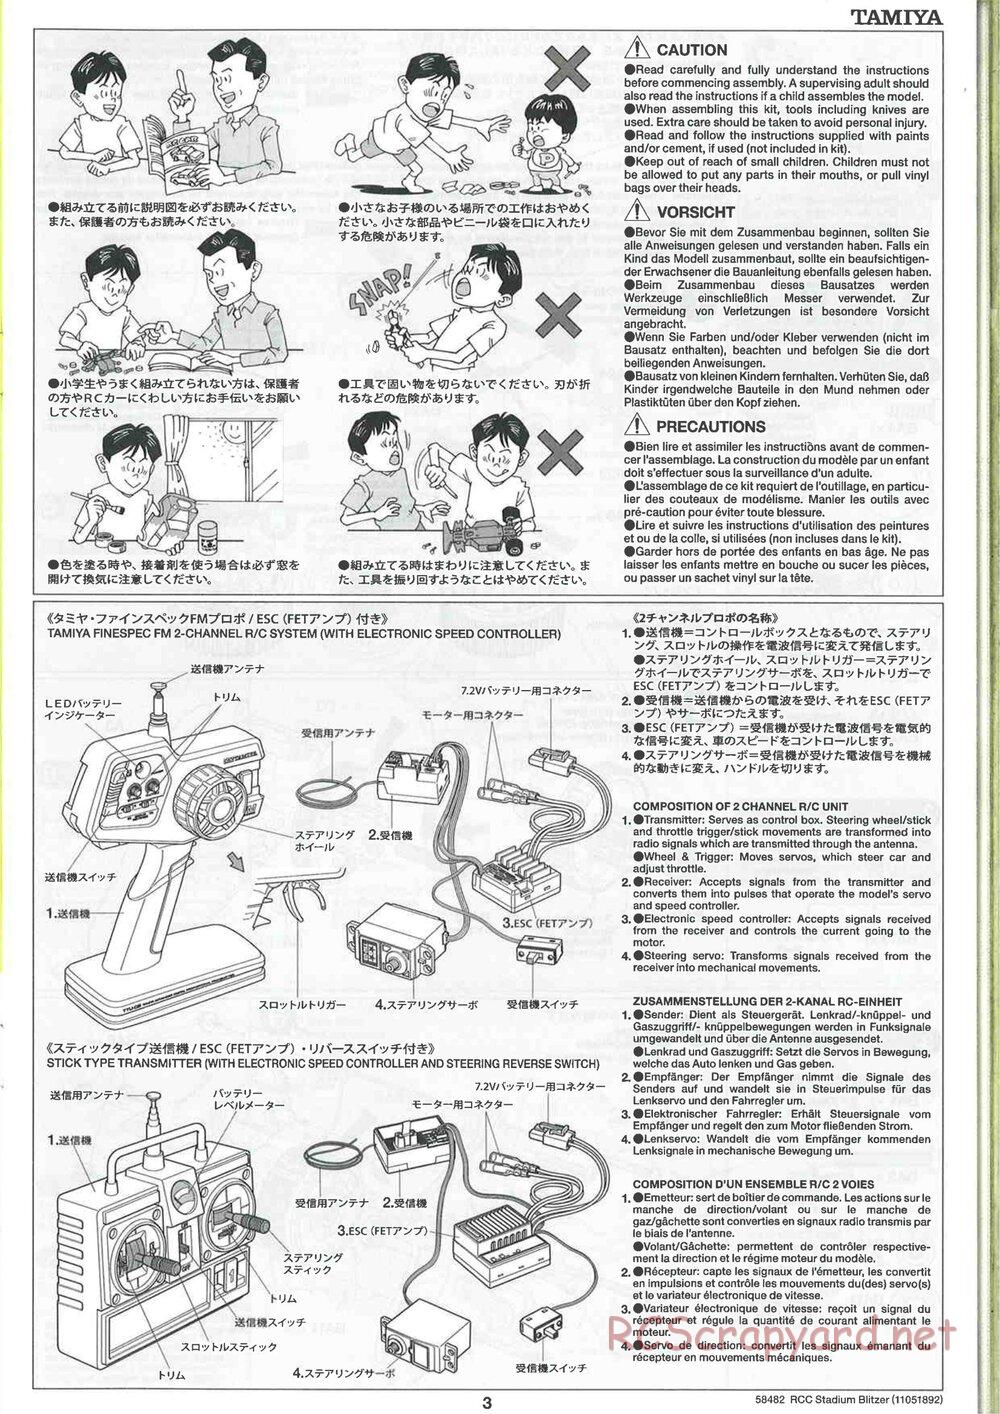 Tamiya - Stadium Blitzer 2010 - FAL Chassis - Manual - Page 3